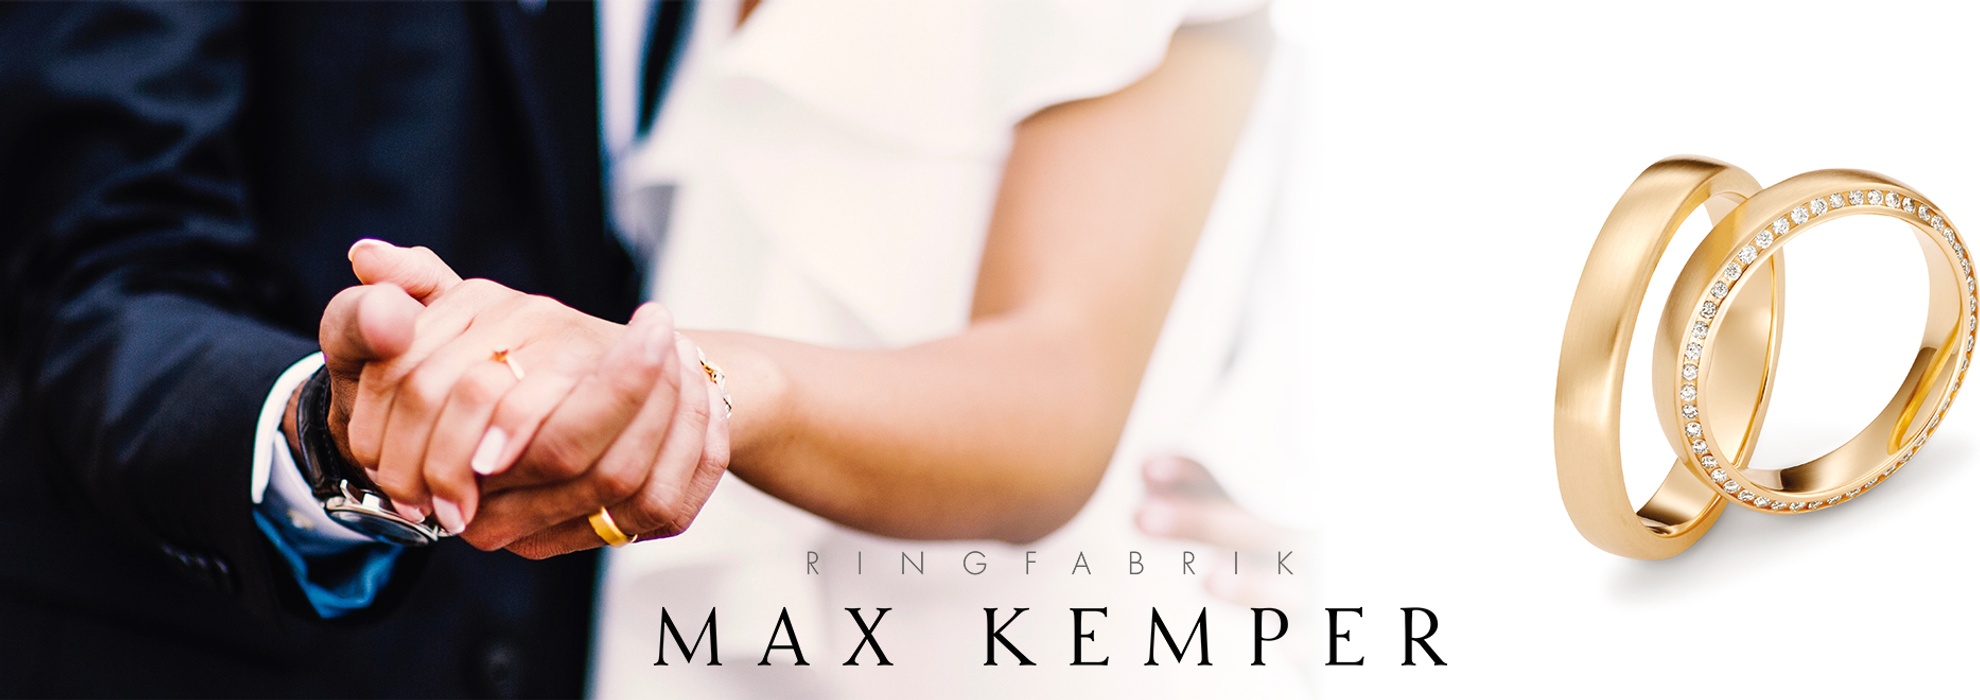 Max Kemper